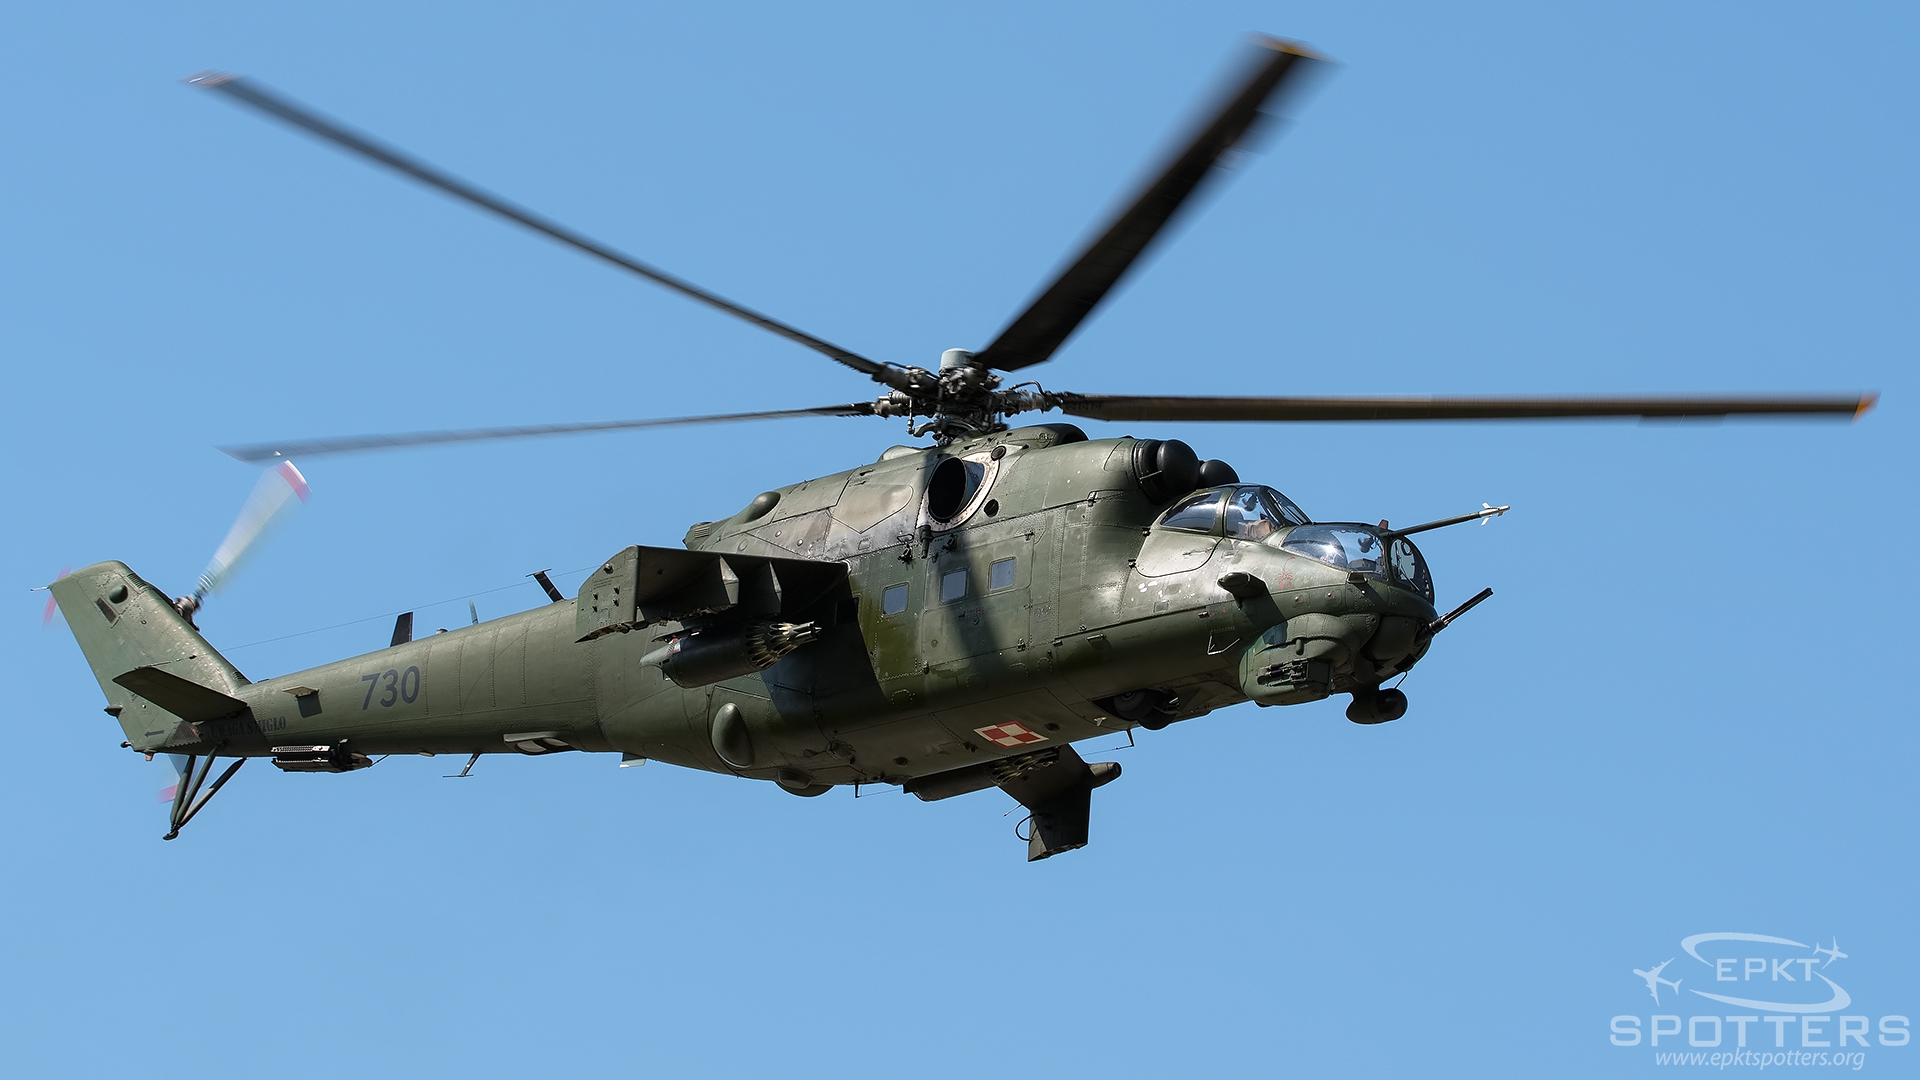 730 - Mil Mi-24 V Hind E (Poland - Army) / 23 Baza Lotnictwa Taktycznego - Minsk Mazowiecki Poland [EPMM/]